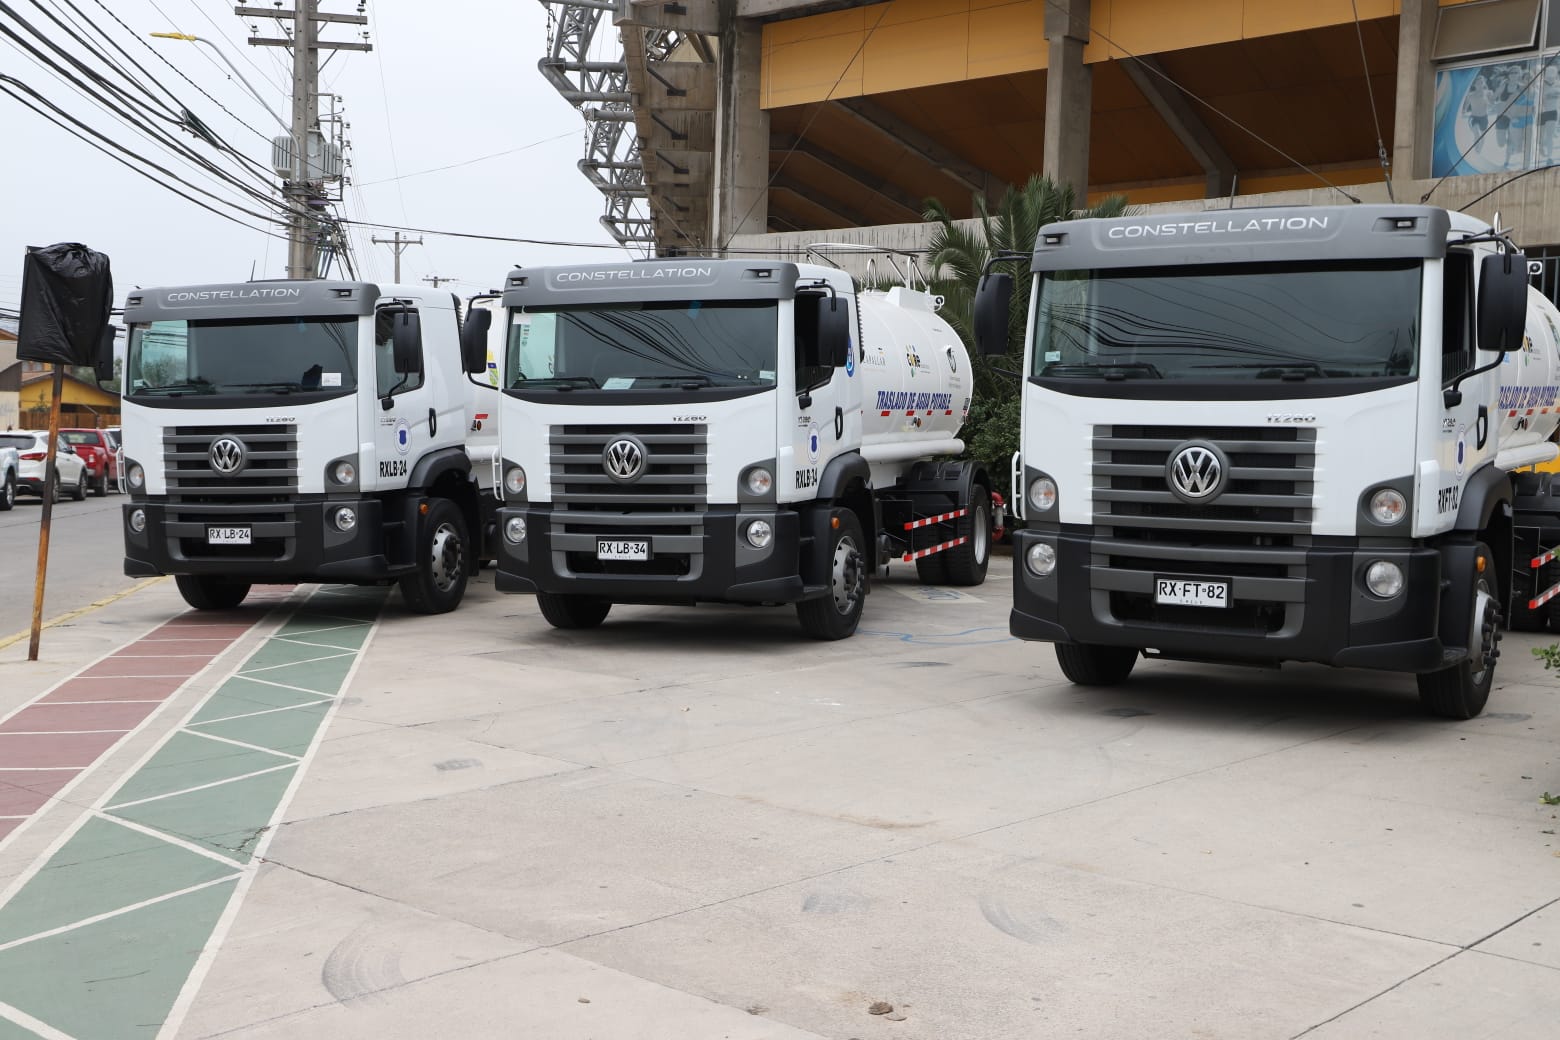 Gobierno Regional de Valparaíso ha entregado 41 camiones aljibes a municipios de la región para enfrentar escasez hídrica